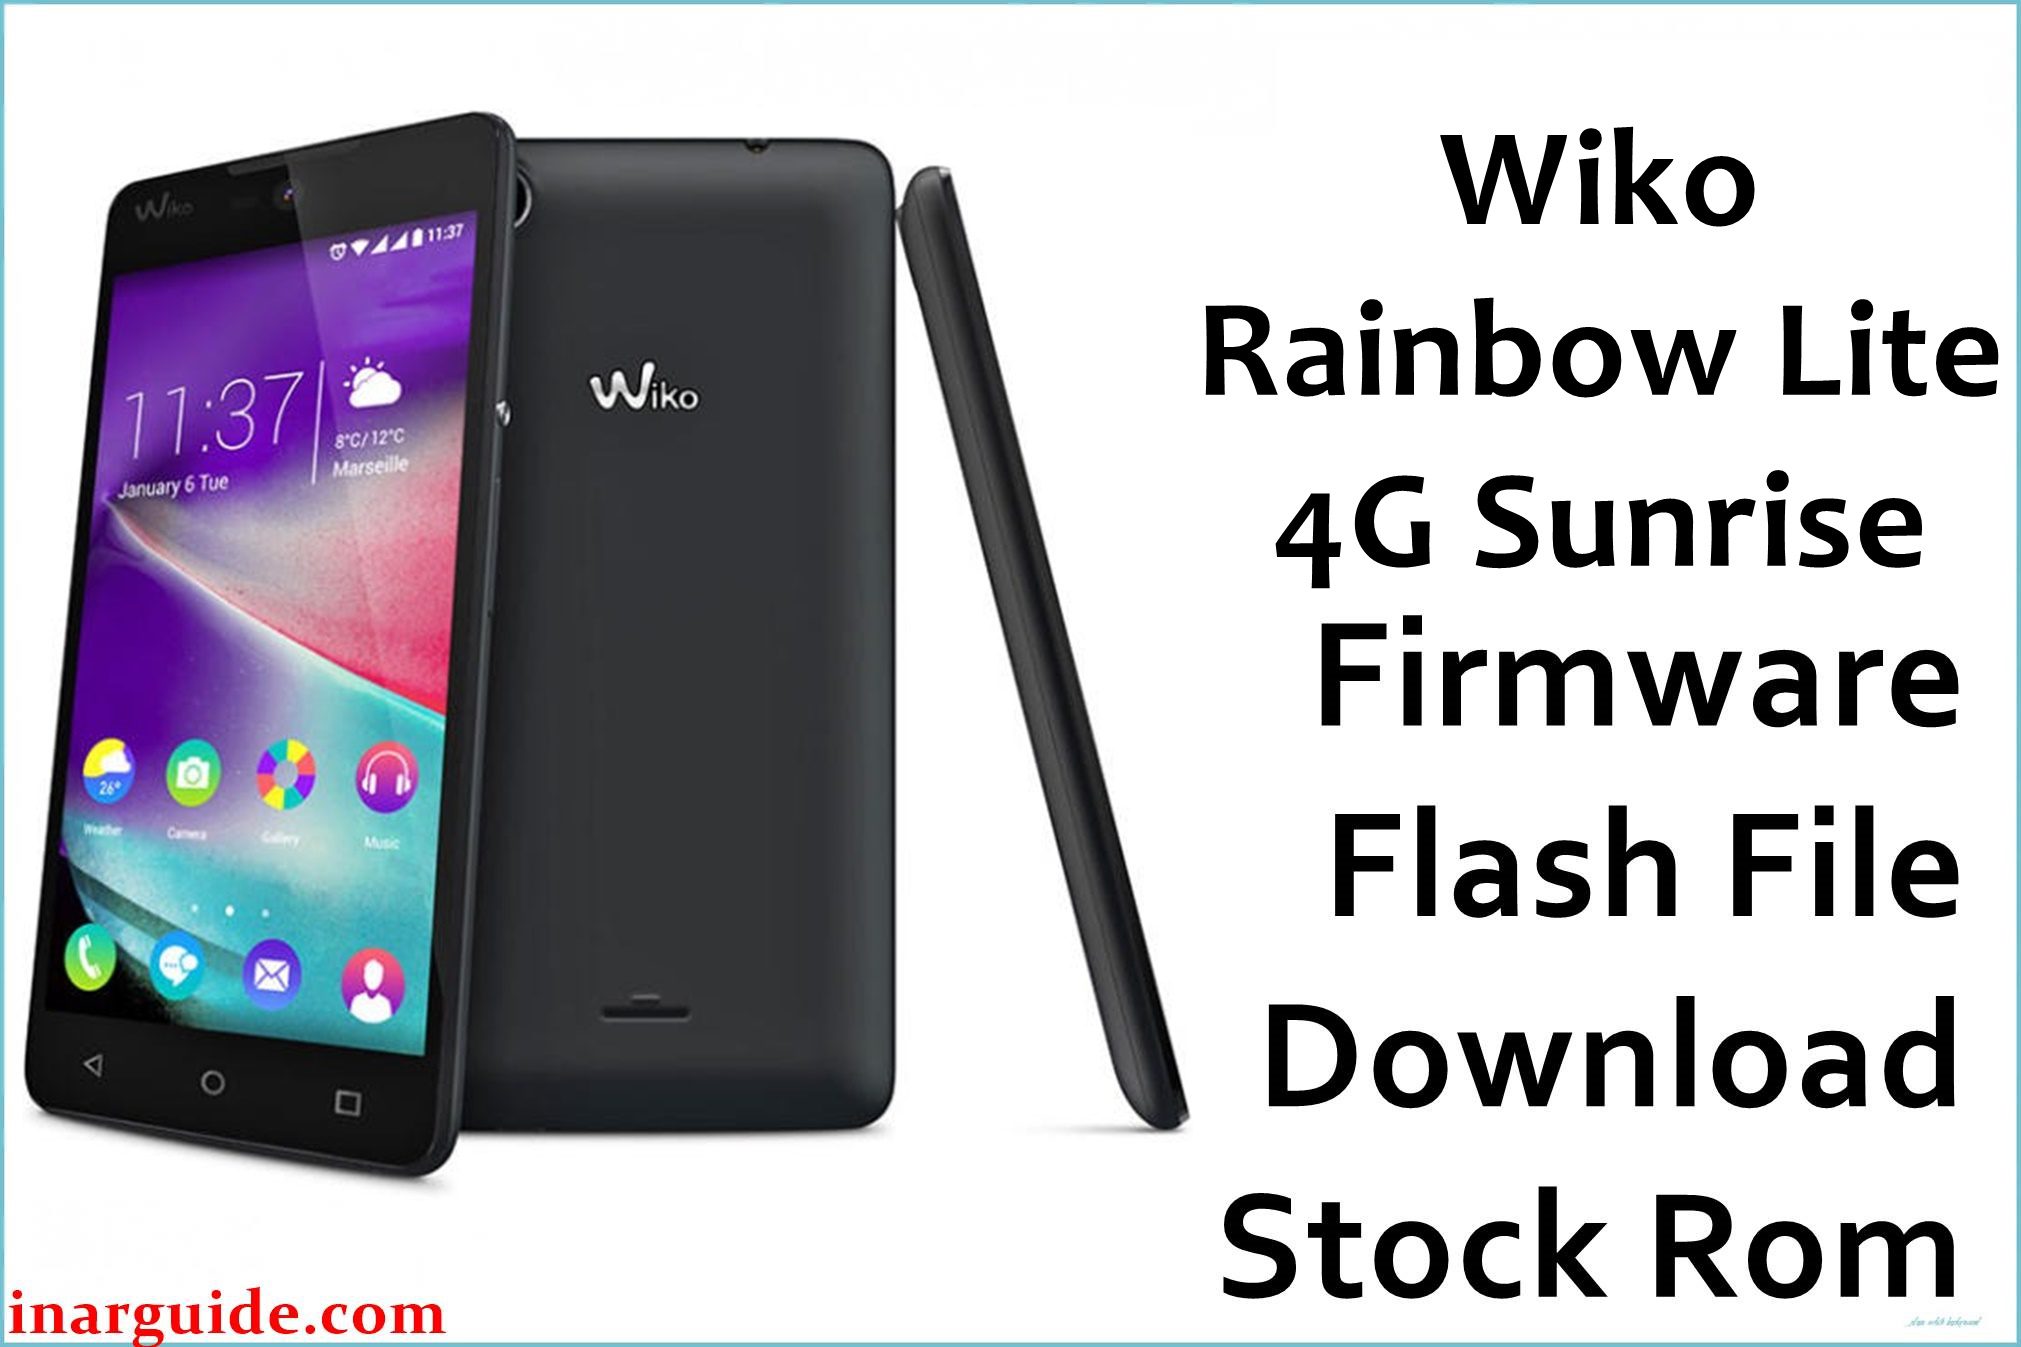 Wiko Rainbow Lite 4G Sunrise